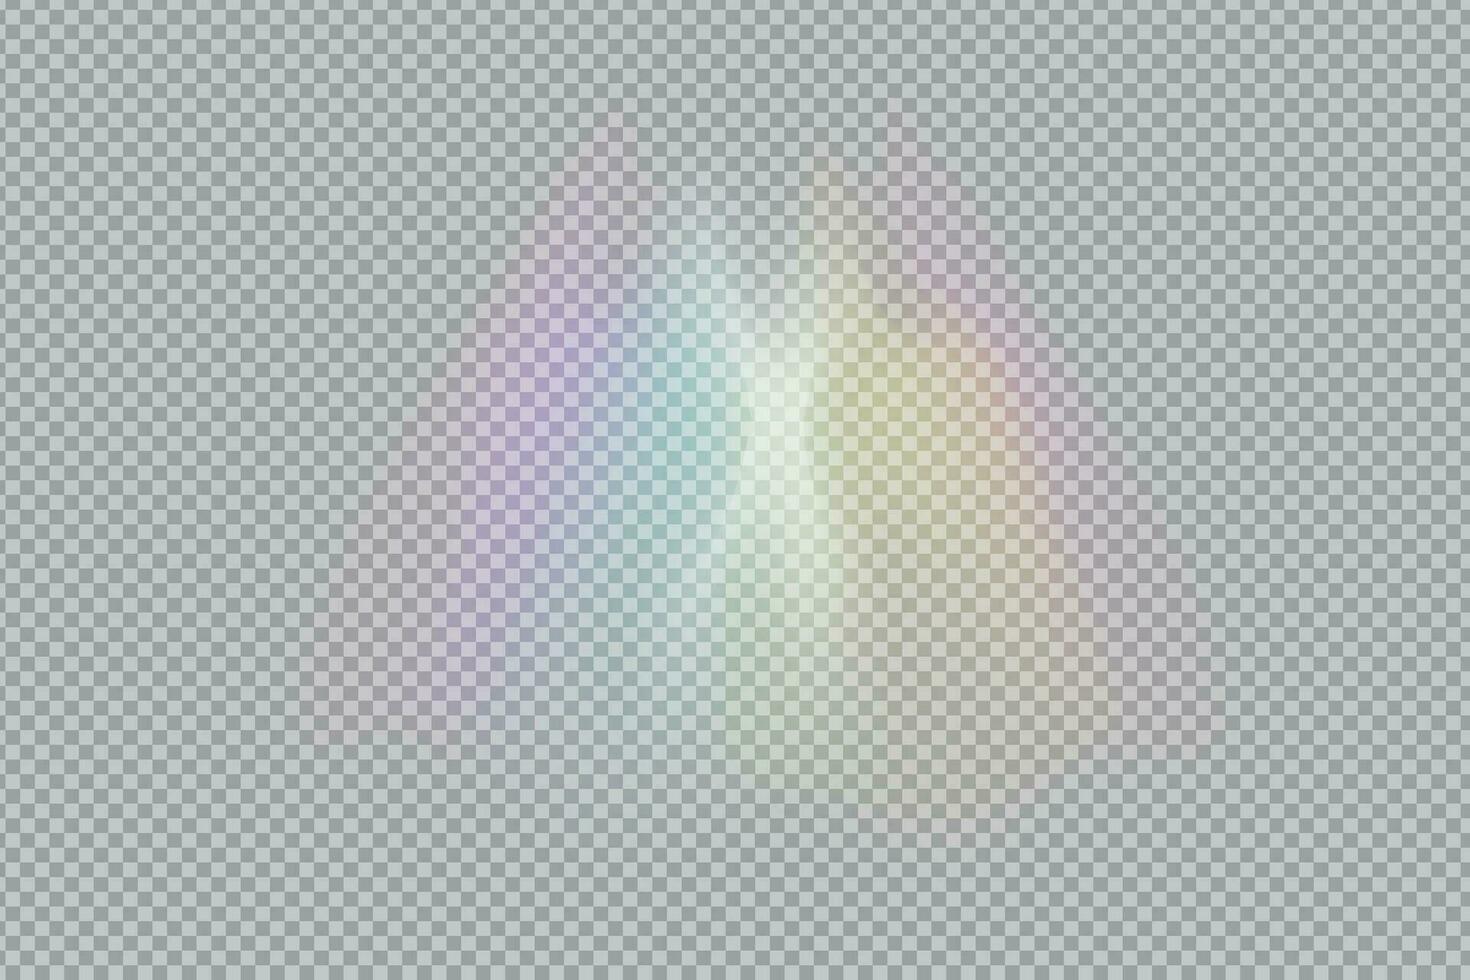 prisma regenboog licht. voorraad vector illustratie in realistisch stijl.